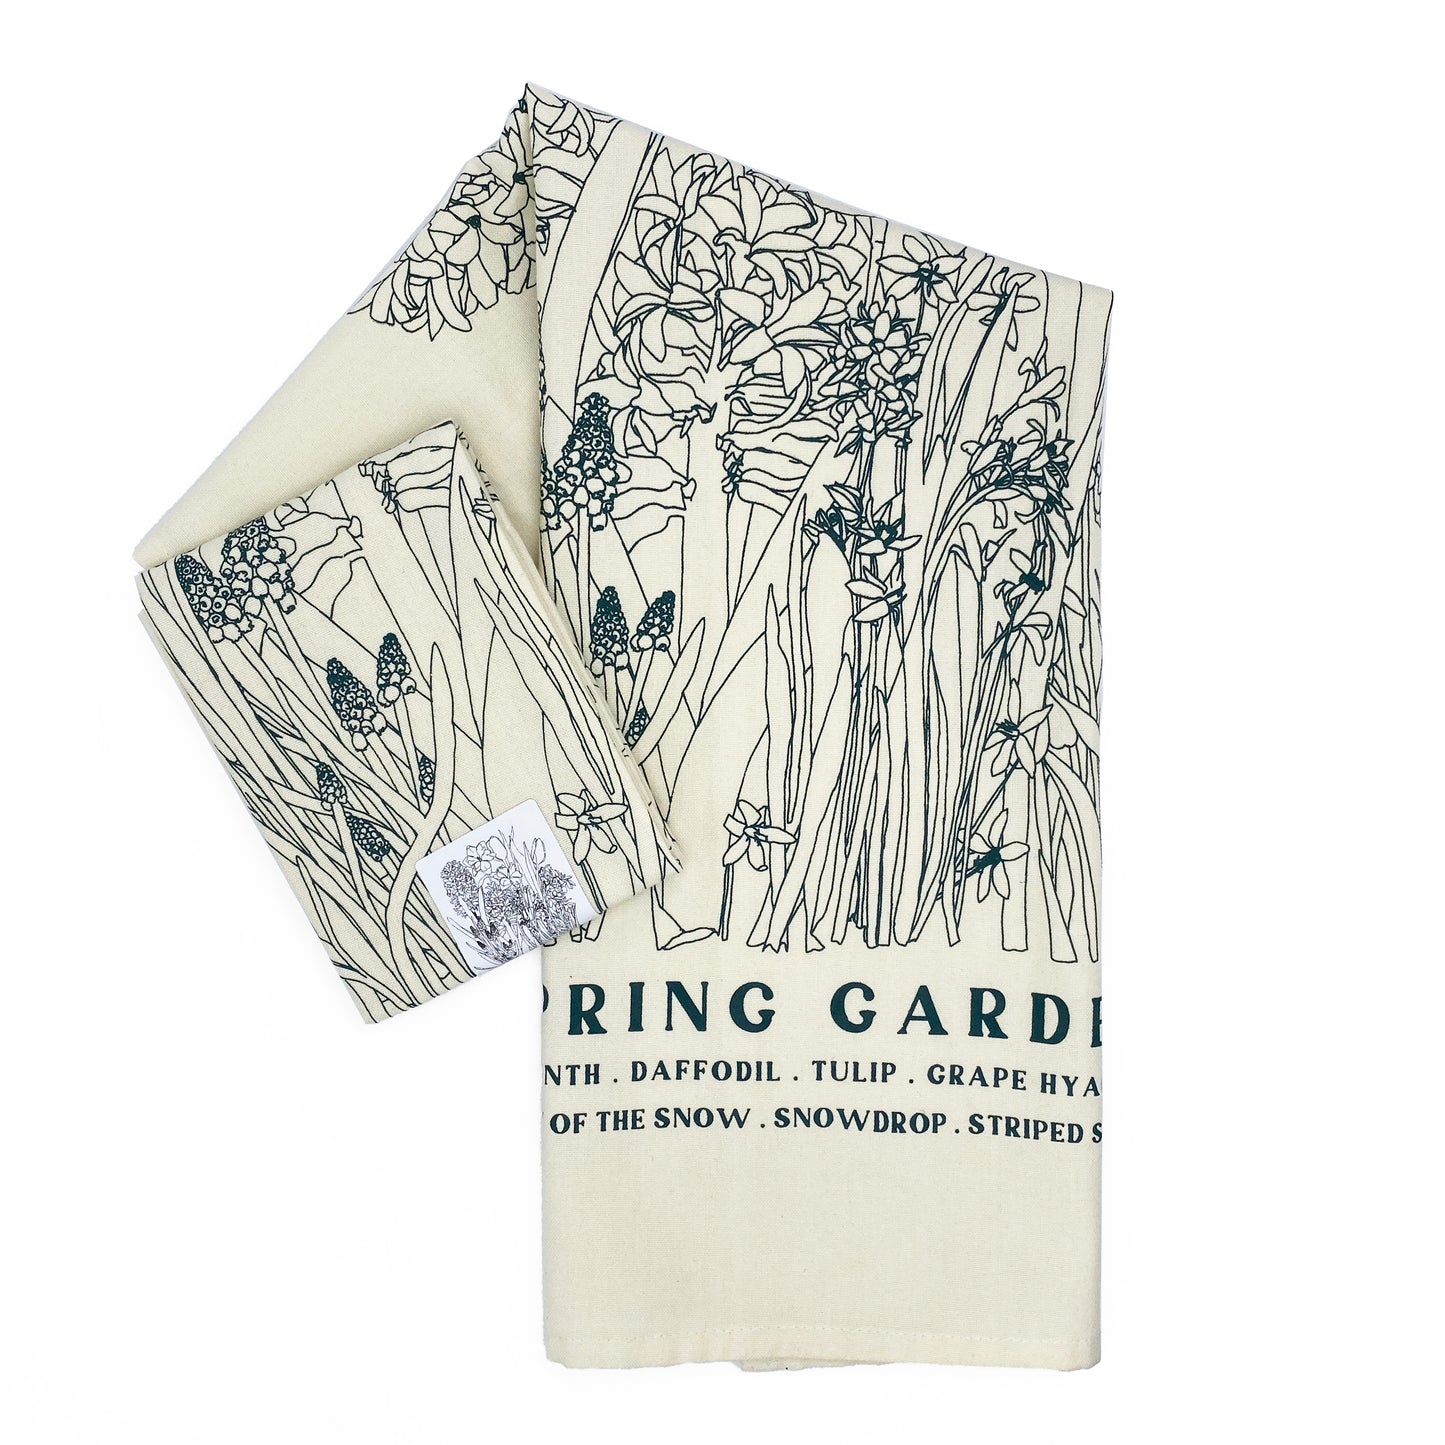 SPRING GARDEN Hand Printed Artisan Tea Towel